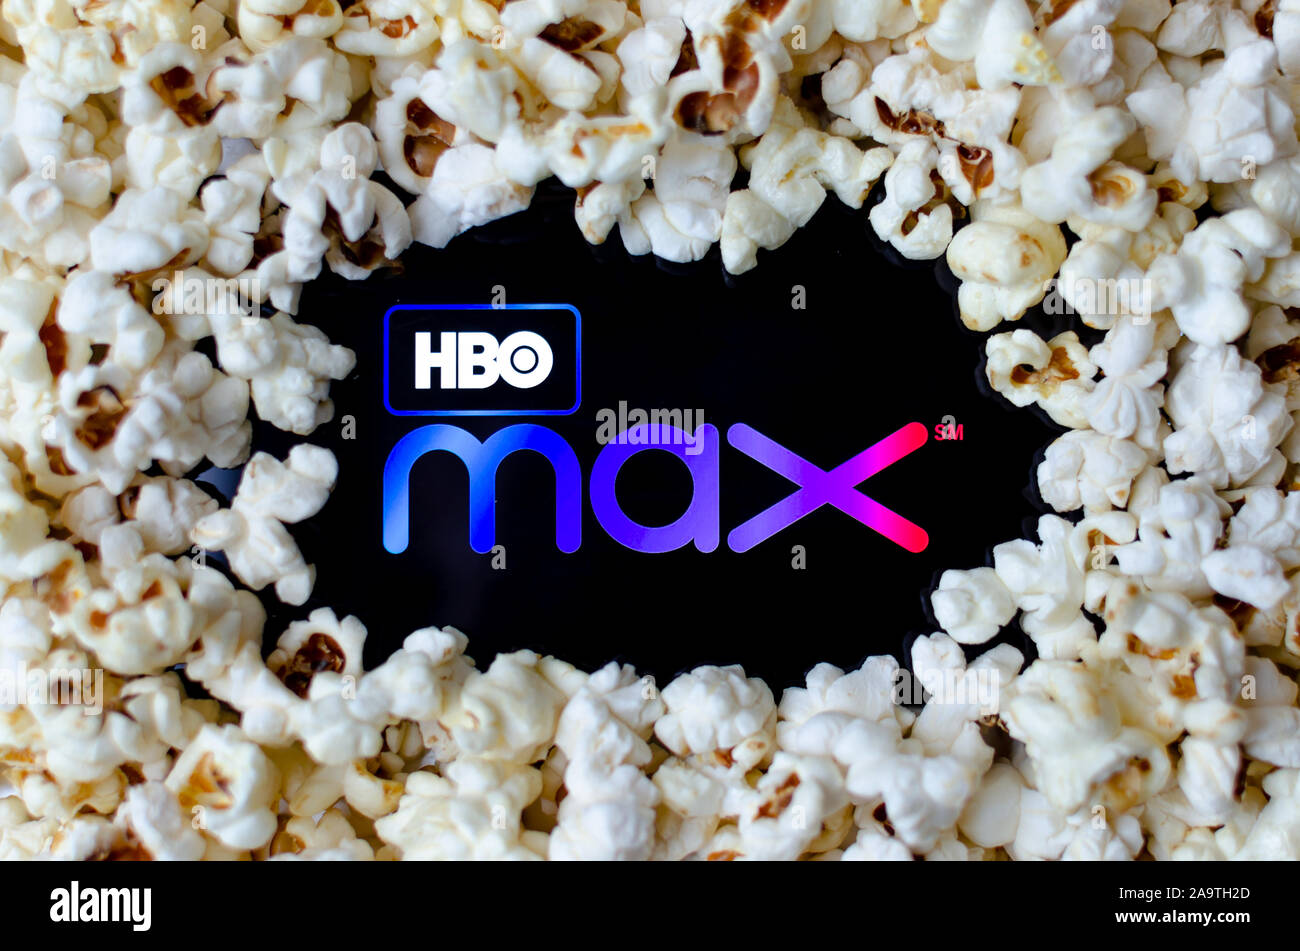 HBO max logo su uno smartphone coperti con popcorn. Foto di concetto per un nuovo servizio di streaming di video. Foto Stock